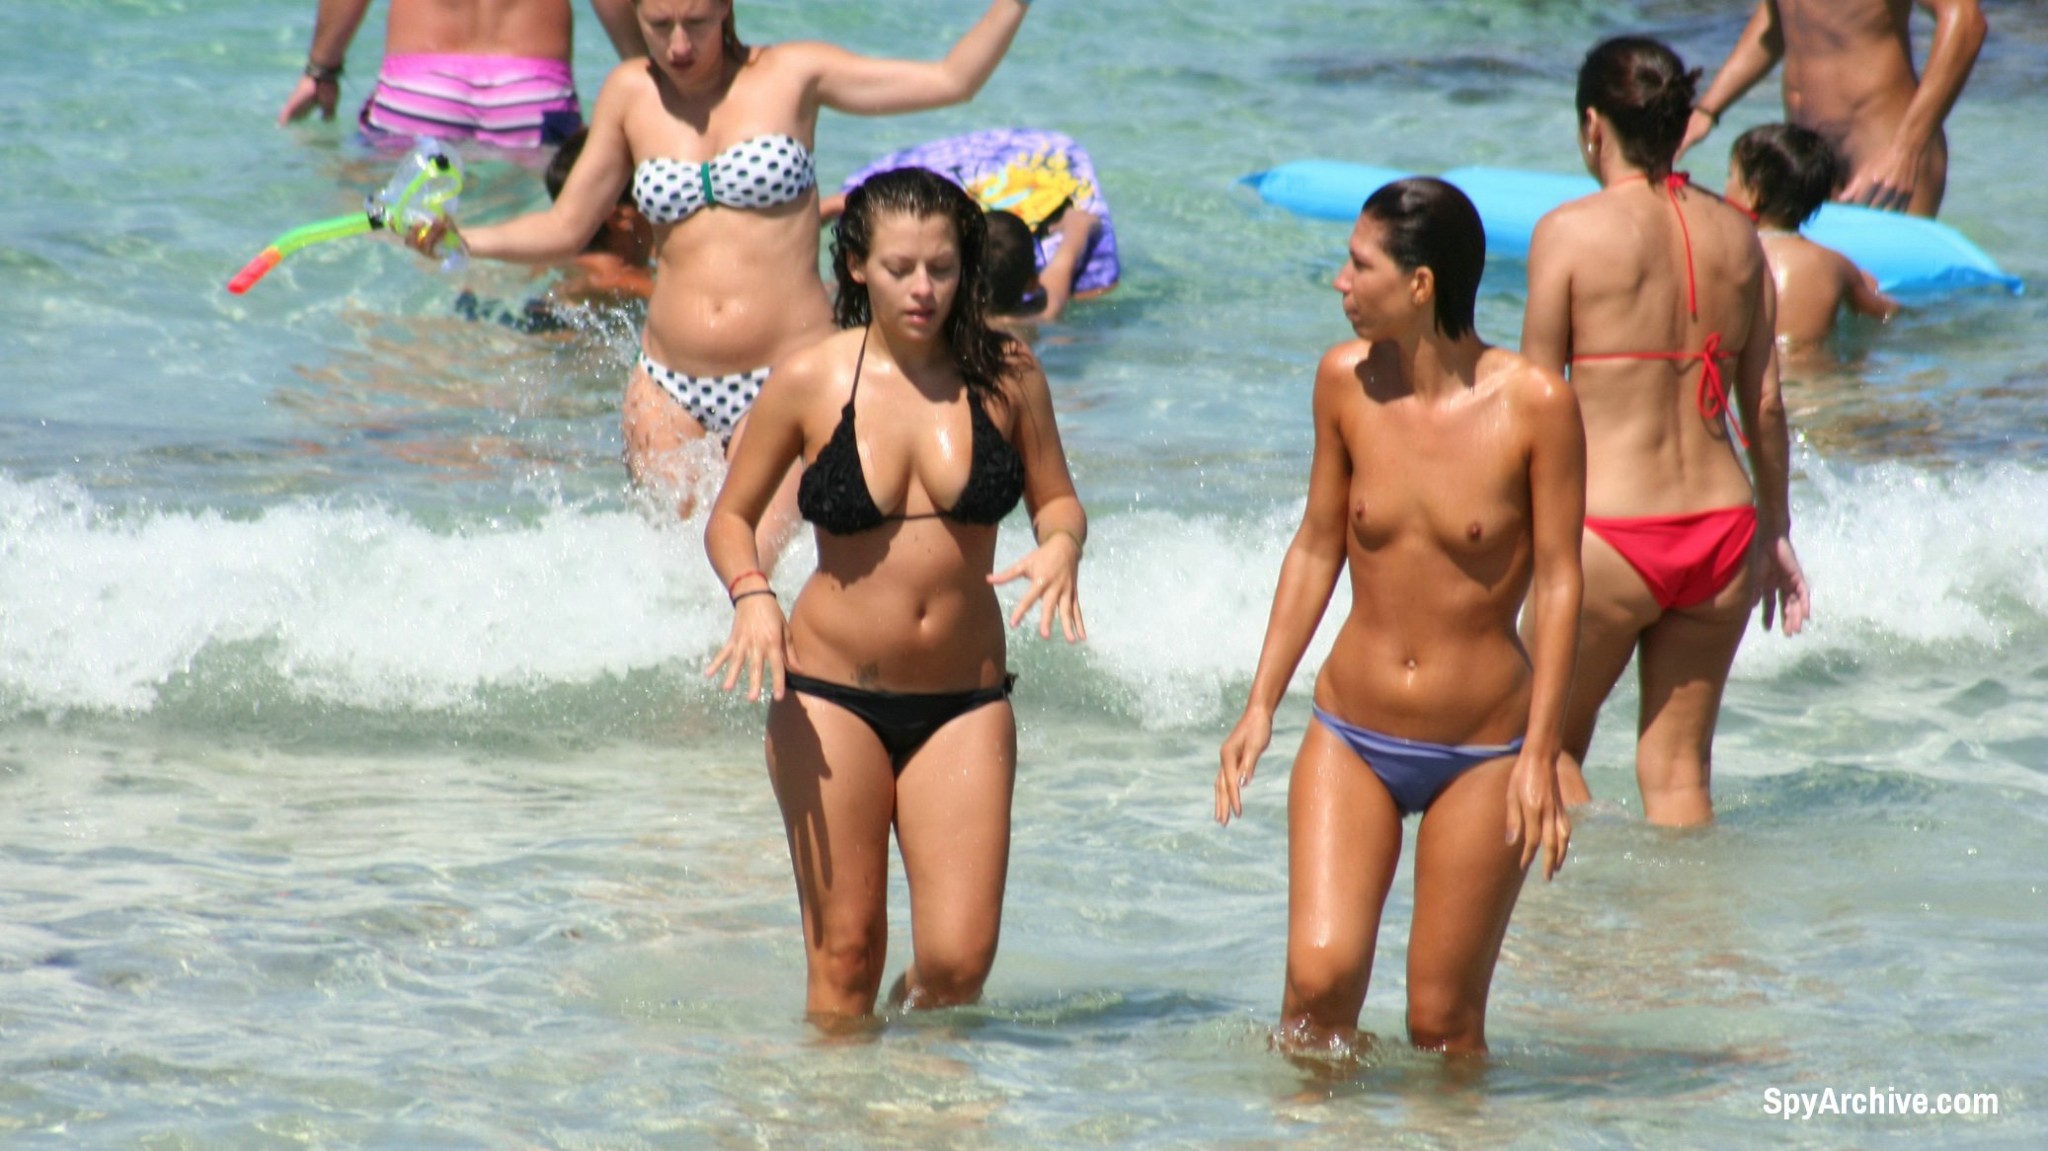 Voyeurbilder von heißen Mädchen am Strand
 #72241892